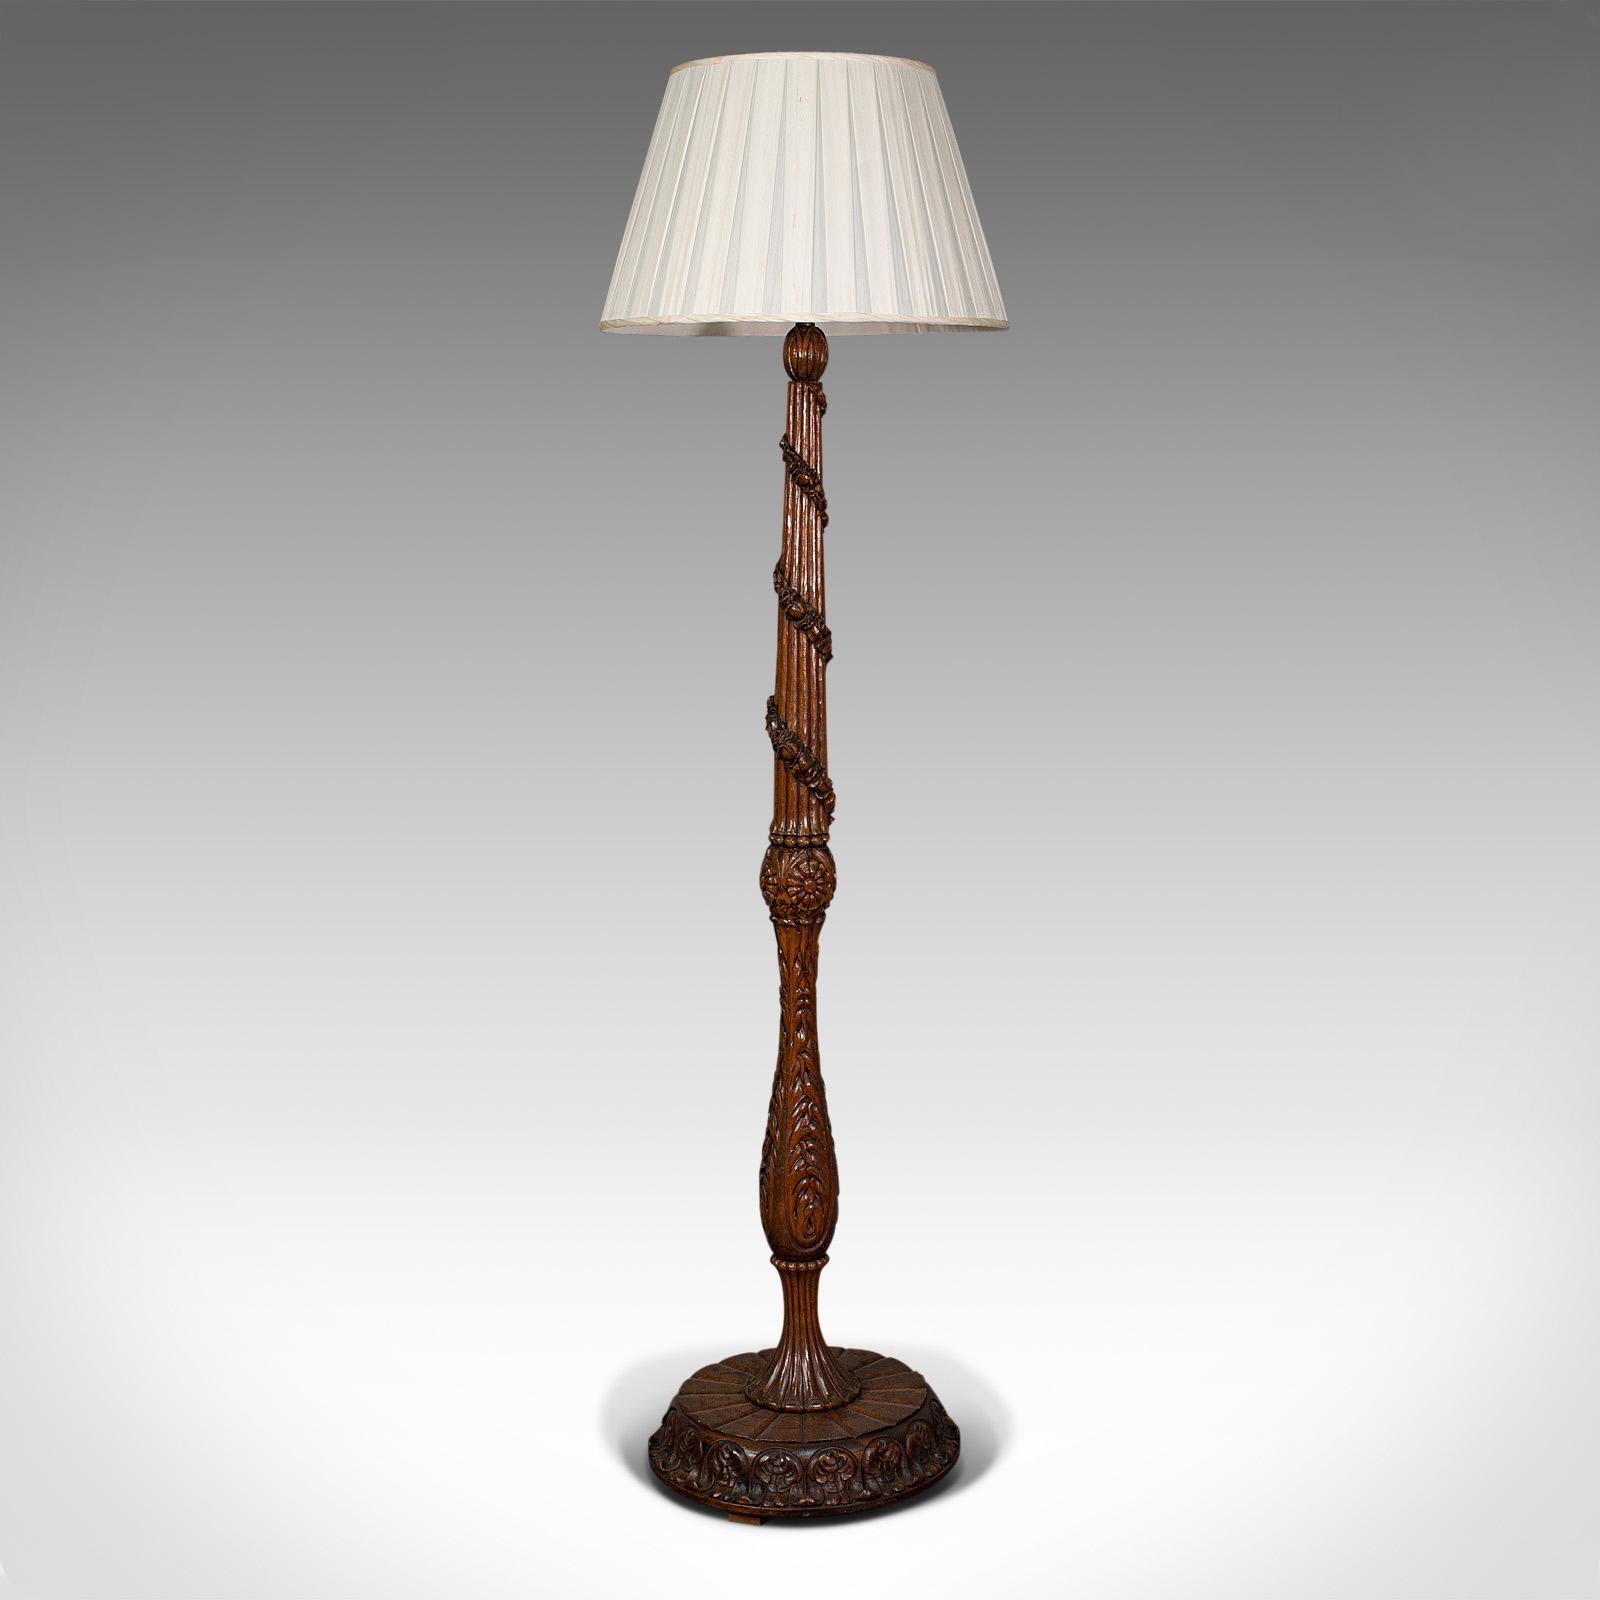 Il s'agit d'une ancienne lampe standard du goût de la Forêt-Noire. Lampe de salon ou de lit en chêne, de style continental, datant de la période édouardienne, vers 1910.

D'une taille impressionnante (1,85 m), il a le charme de la